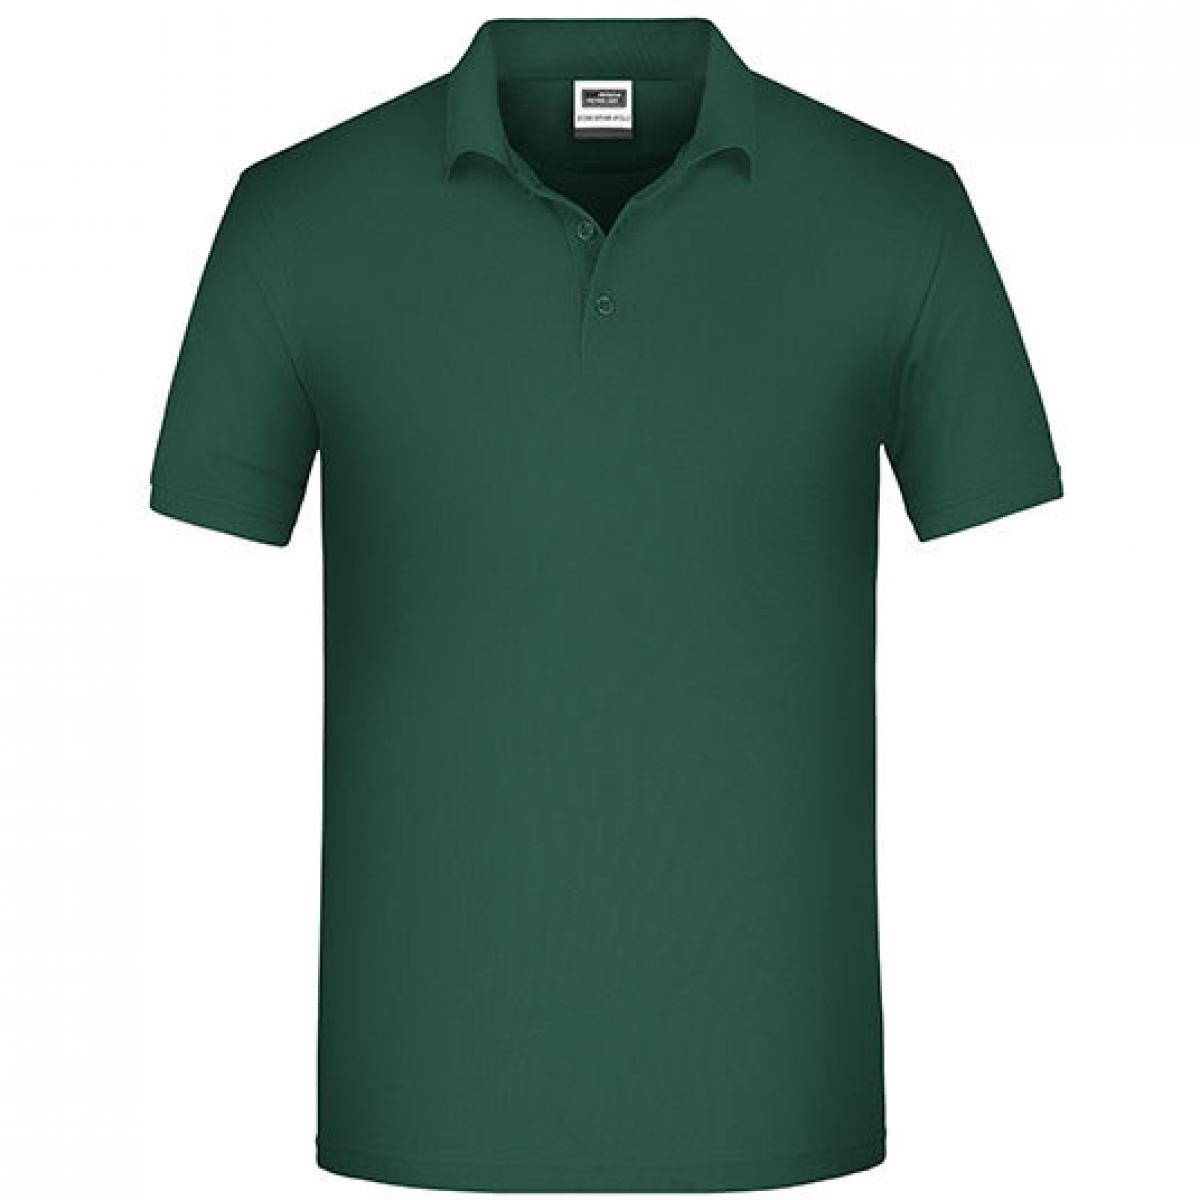 Hersteller: James+Nicholson Herstellernummer: JN874 Artikelbezeichnung: Herren Bio Workwear Polo, Bio-Baumwolle und Polyester Farbe: Dark Green